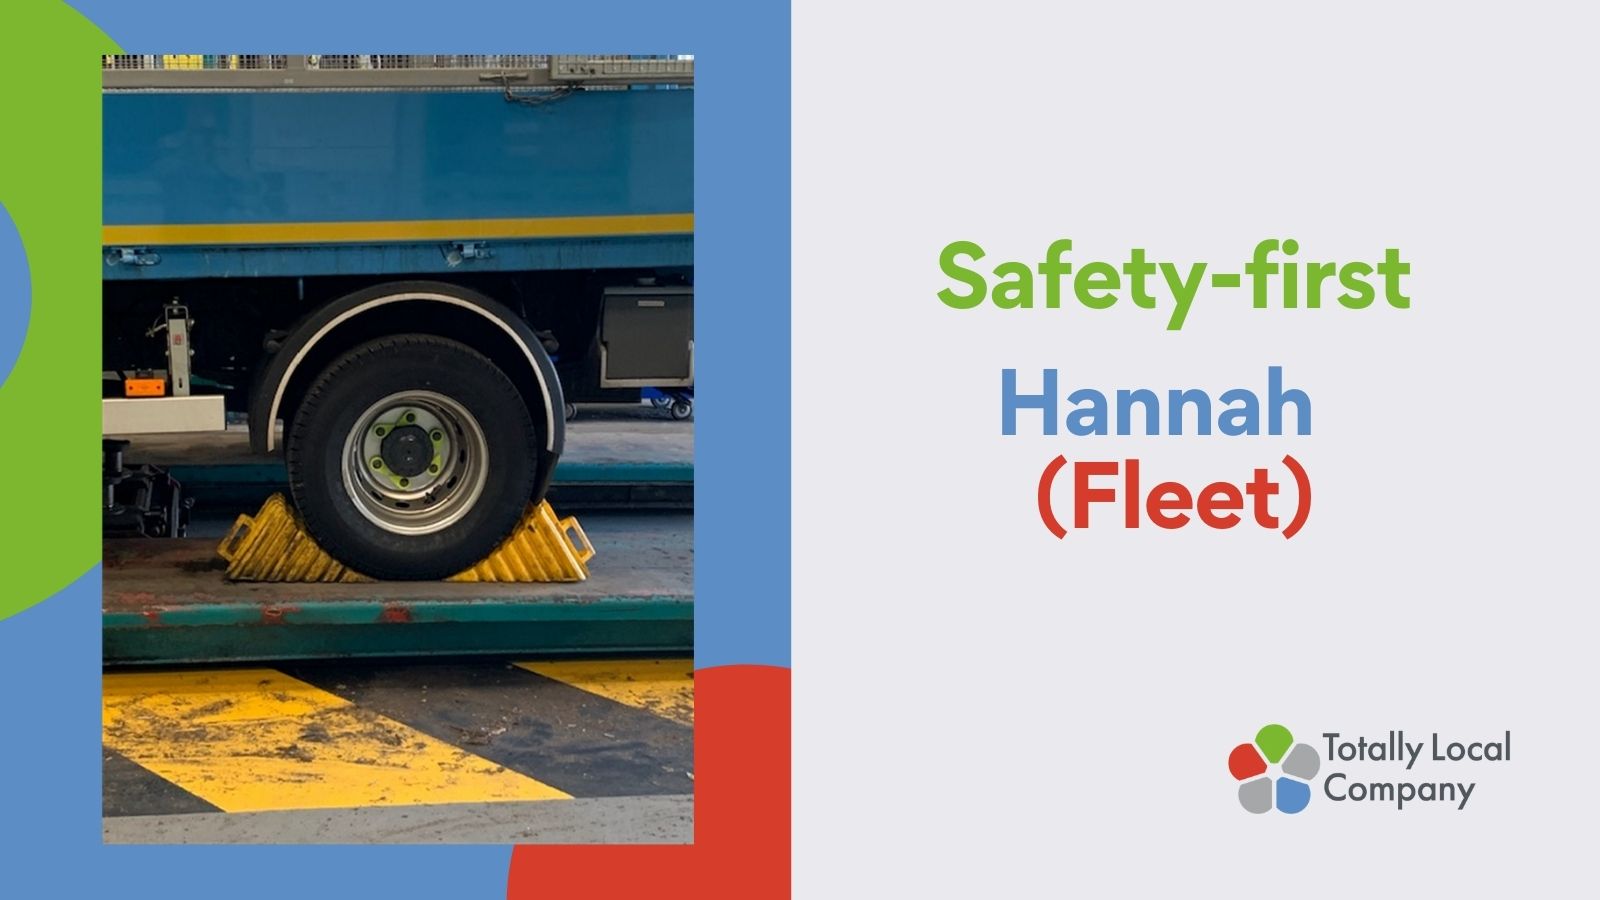 Fleet team – Safety-first